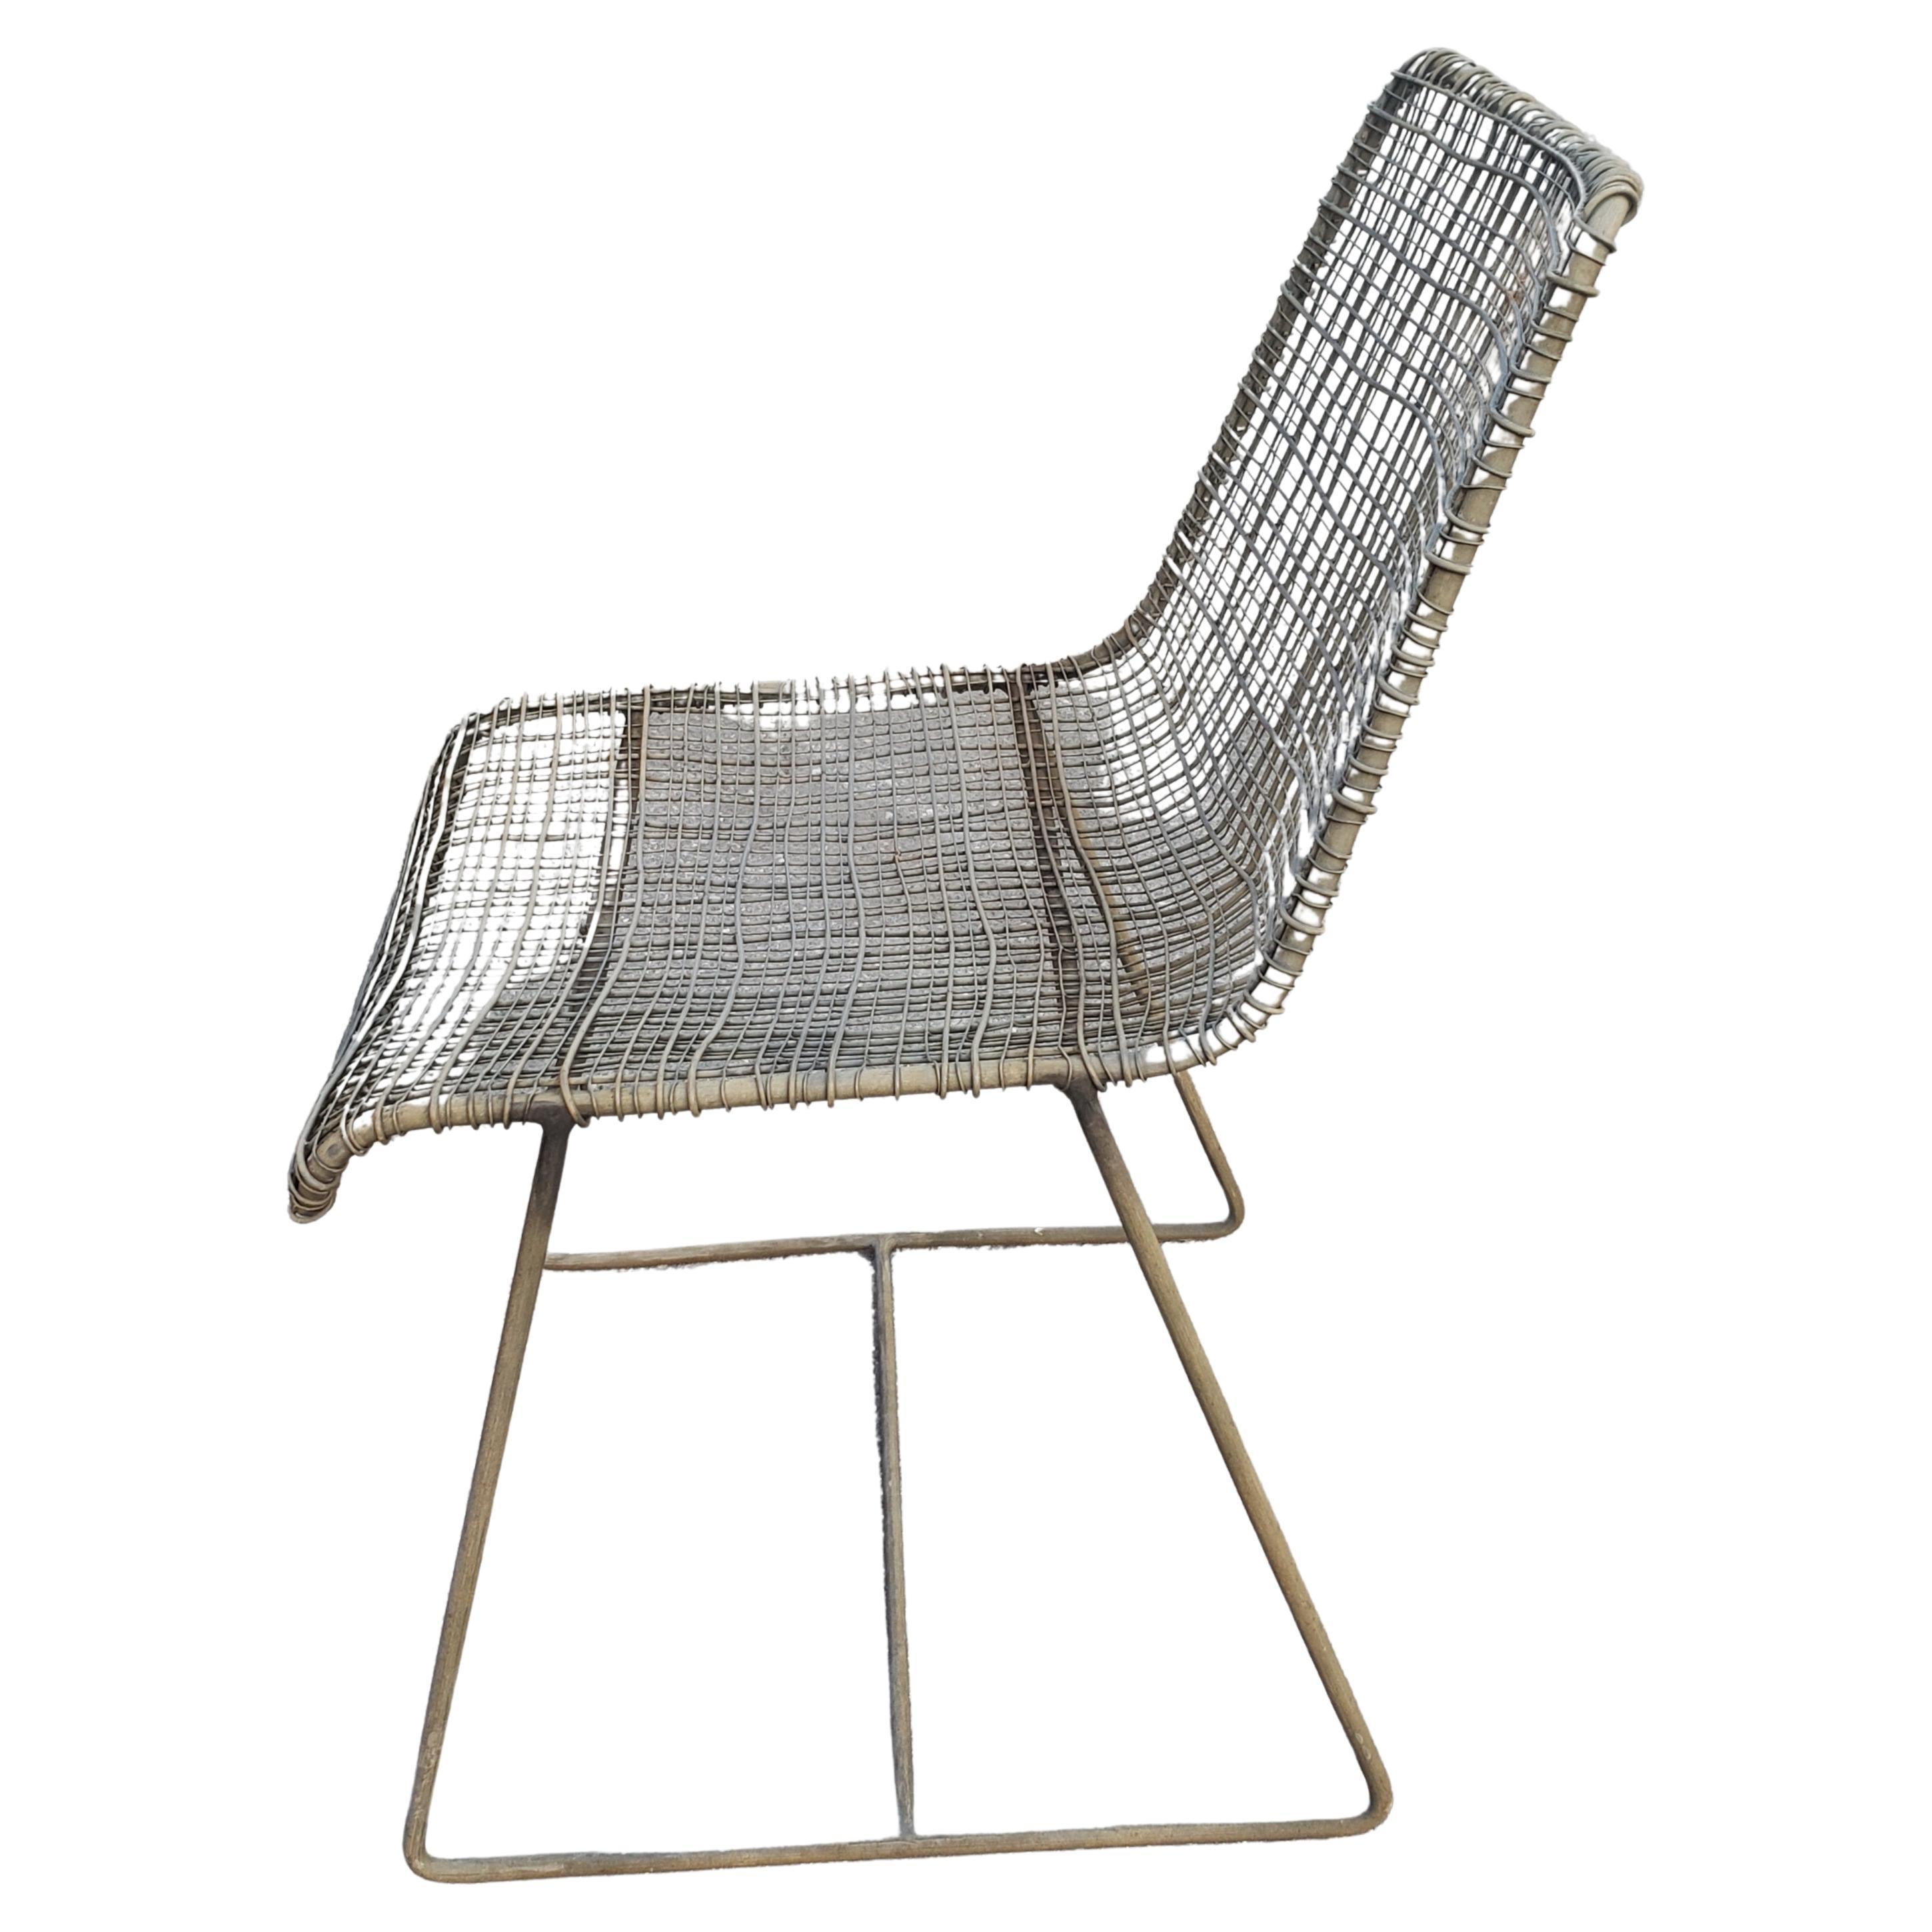 Komfortabel, nahezu wartungsfrei und mit einem gewissen Stil, sind diese BoConcept Style Outdoor-Möbel der perfekte Rahmen für großartige Momente im Freien. Mit seinem leichten, raffinierten Look schafft dieser Outdoor-Sessel eine einladende, urbane